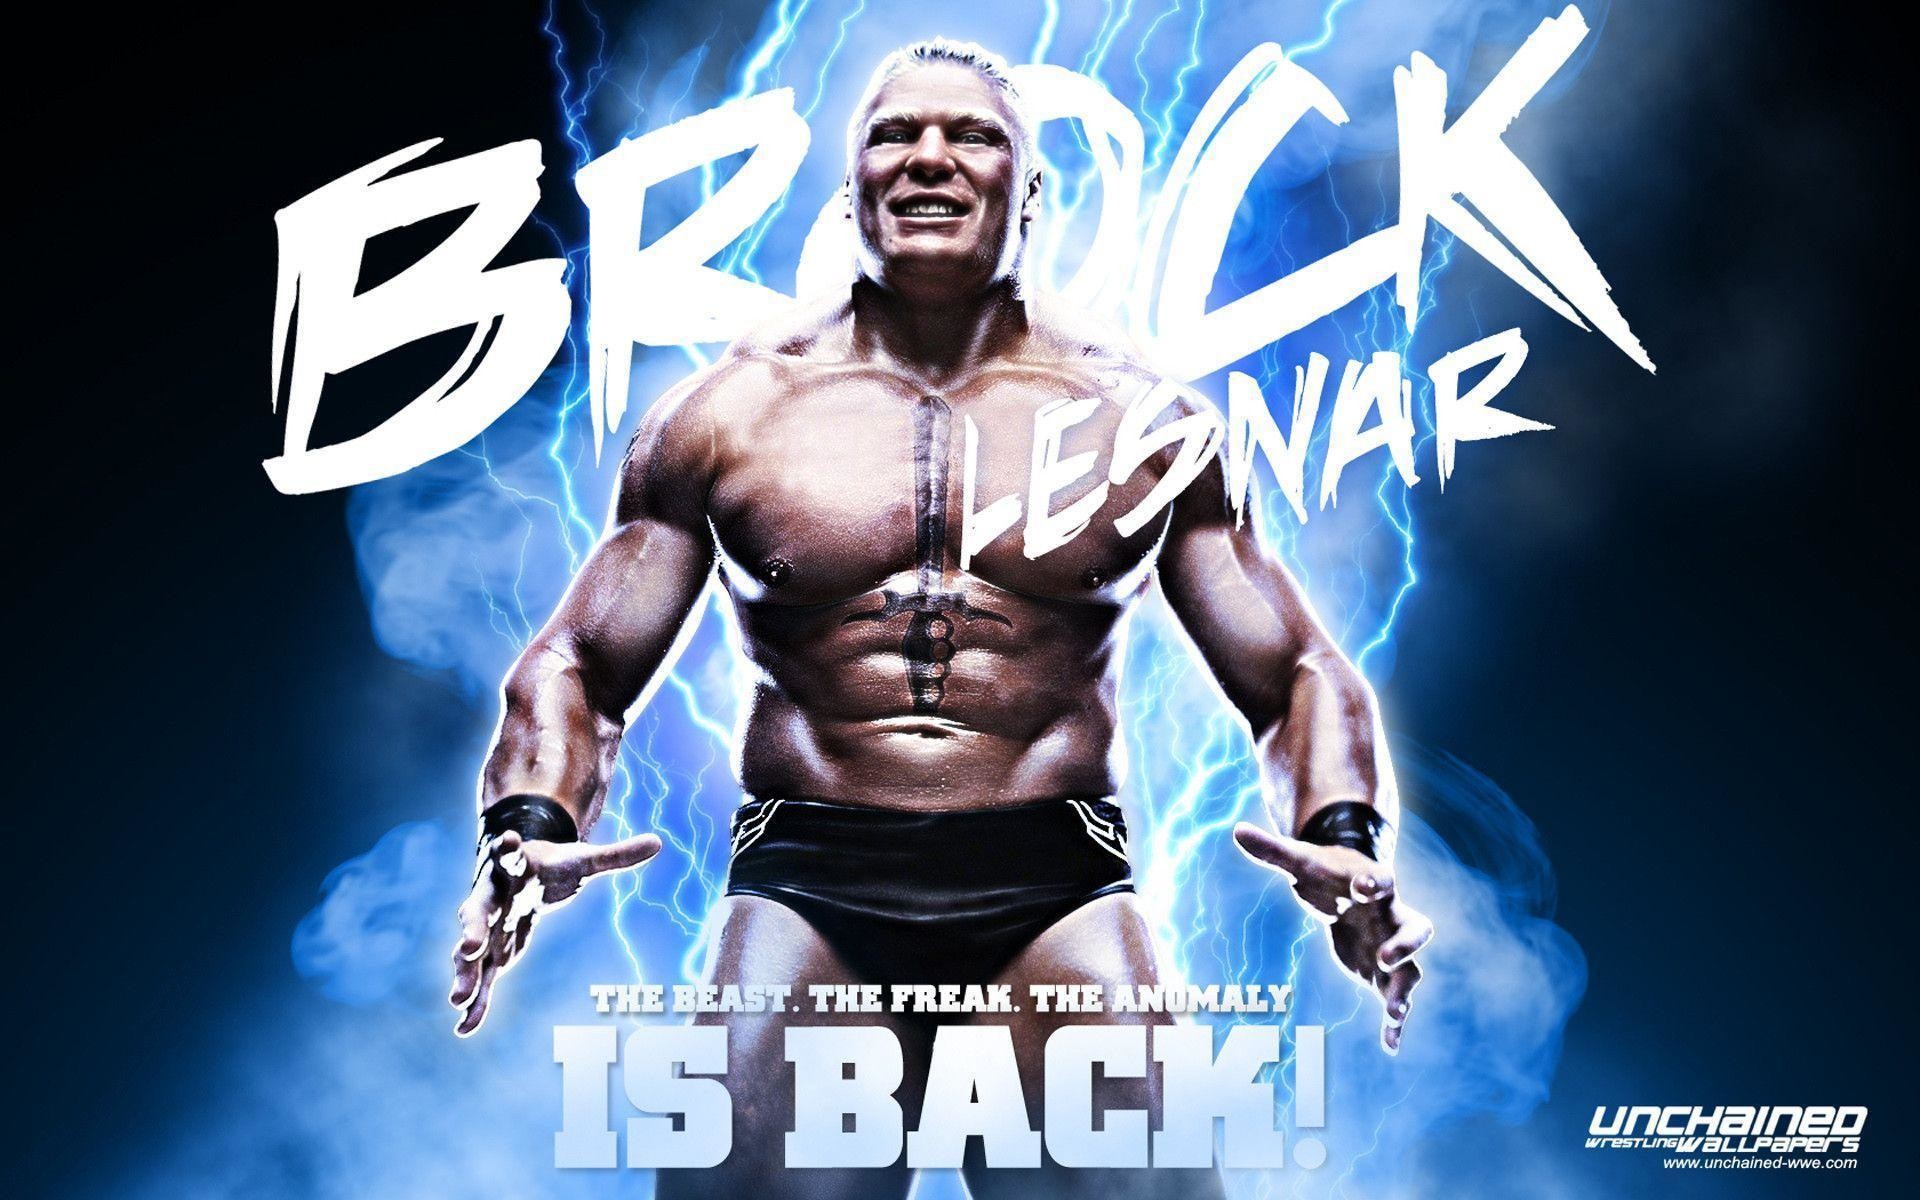 Brock Lesnar 1080P, 2K, 4K, 5K HD wallpapers free download | Wallpaper Flare